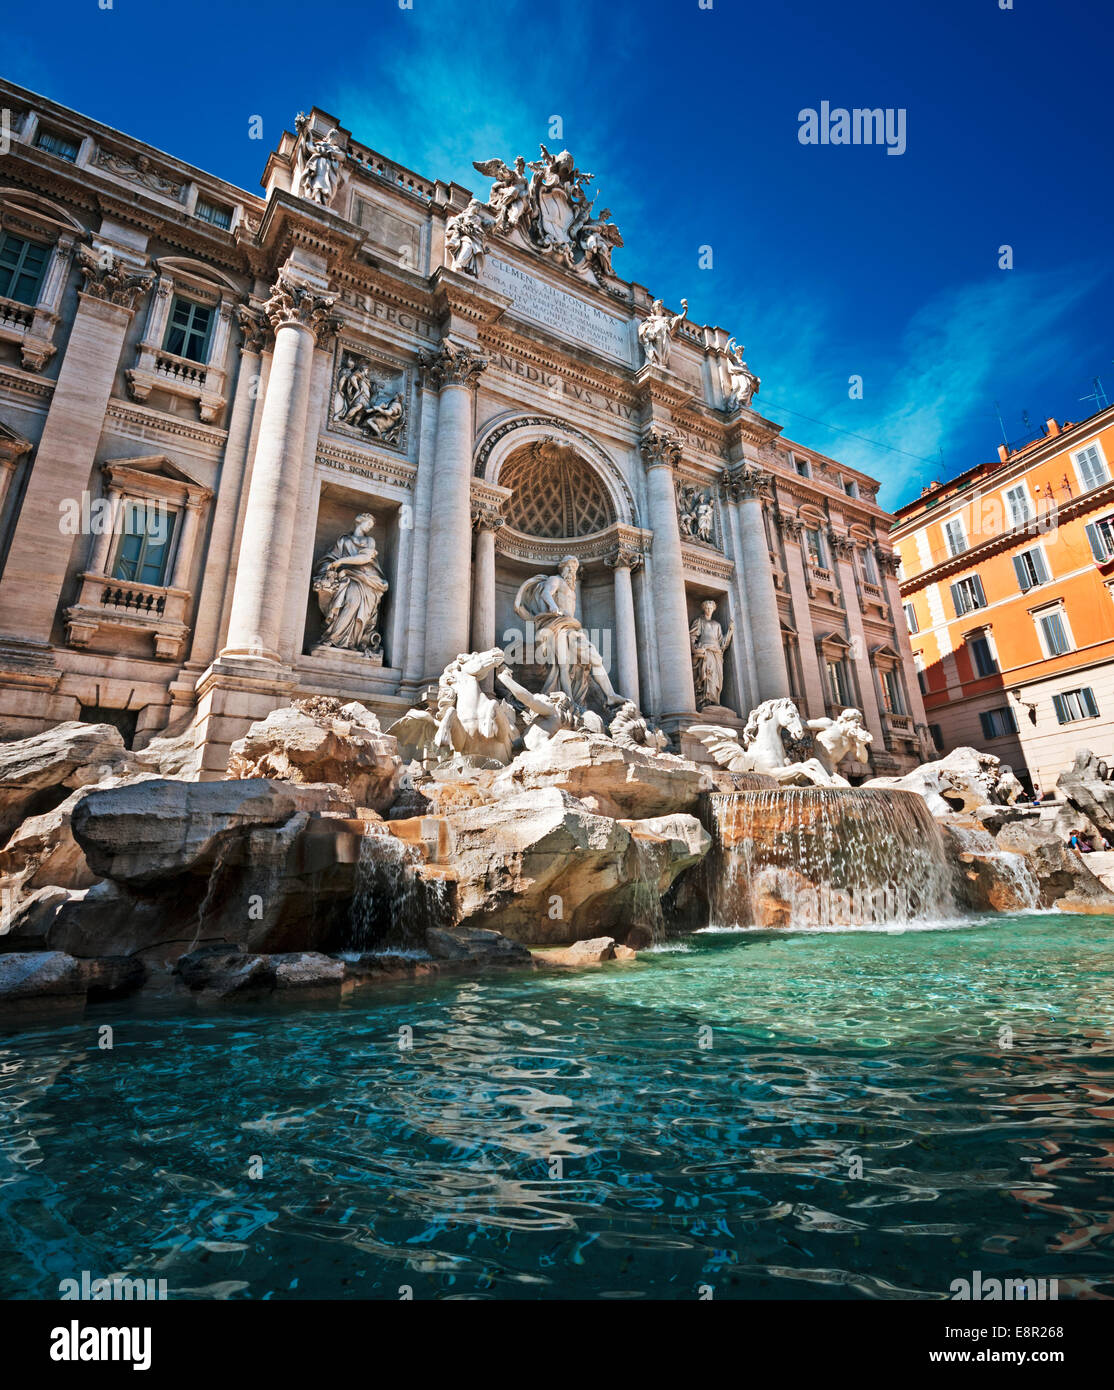 Fontaine de Trevi est un symbole de la Rome Impériale. C'est l'une des plus populaires attractions touristiques. Banque D'Images